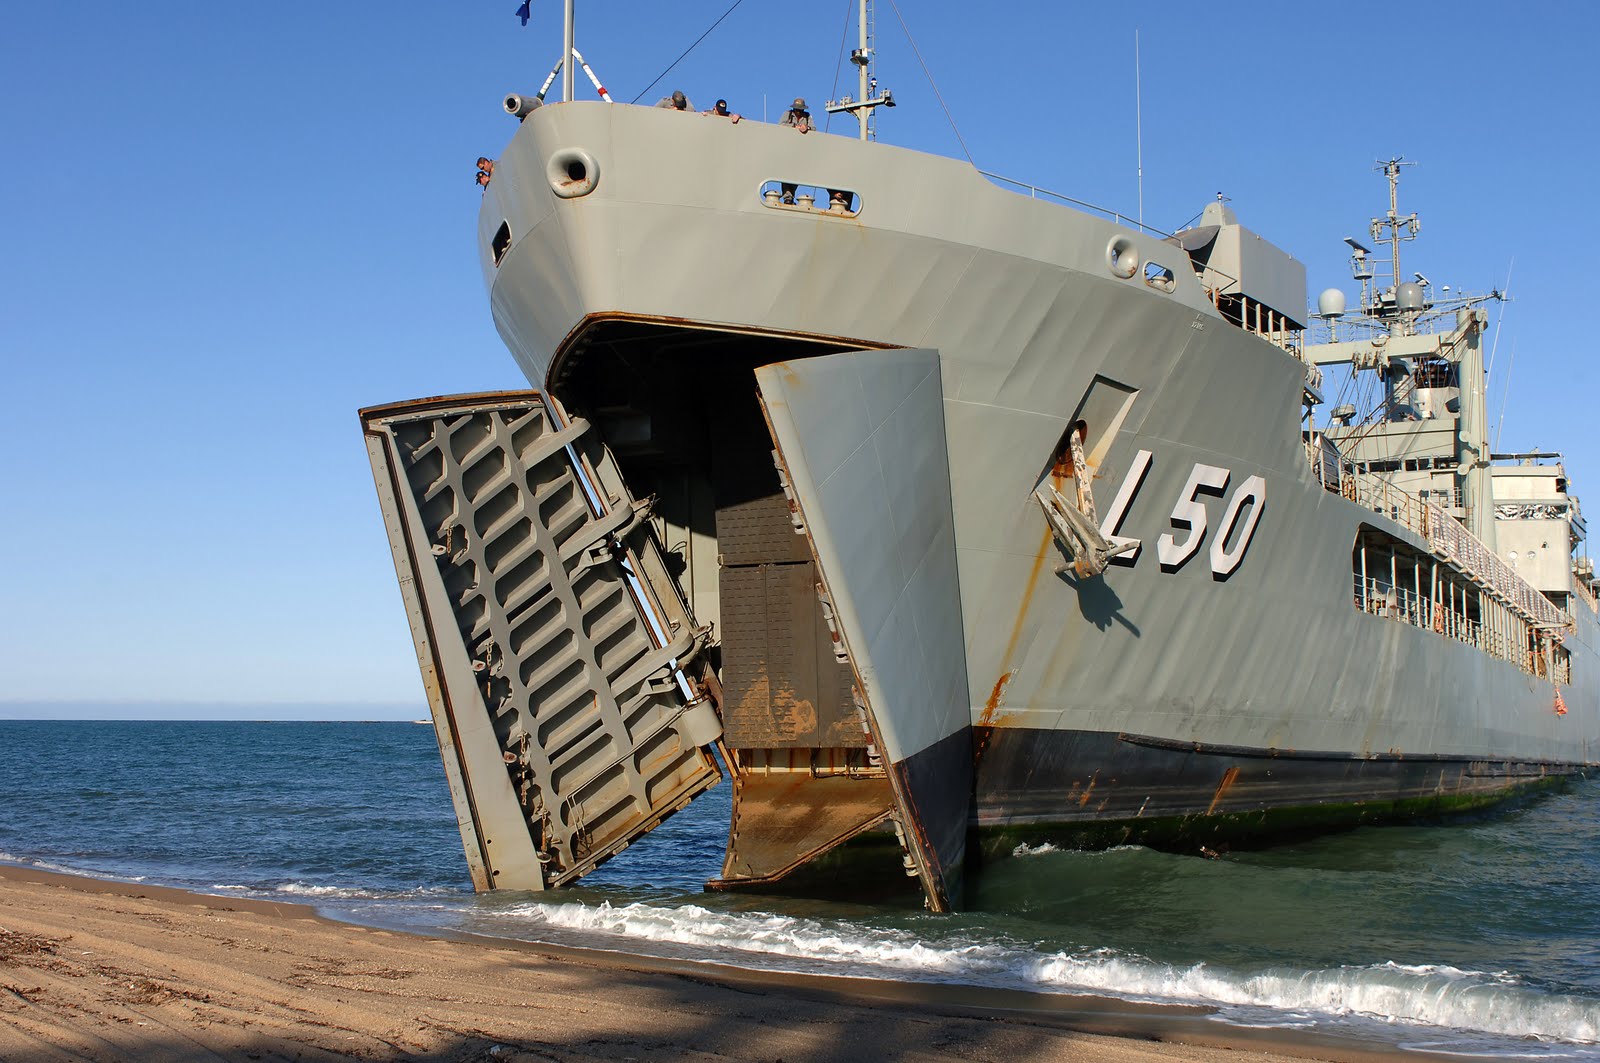 HMAS Tobruk (L50) Backgrounds, Compatible - PC, Mobile, Gadgets| 1600x1063 px